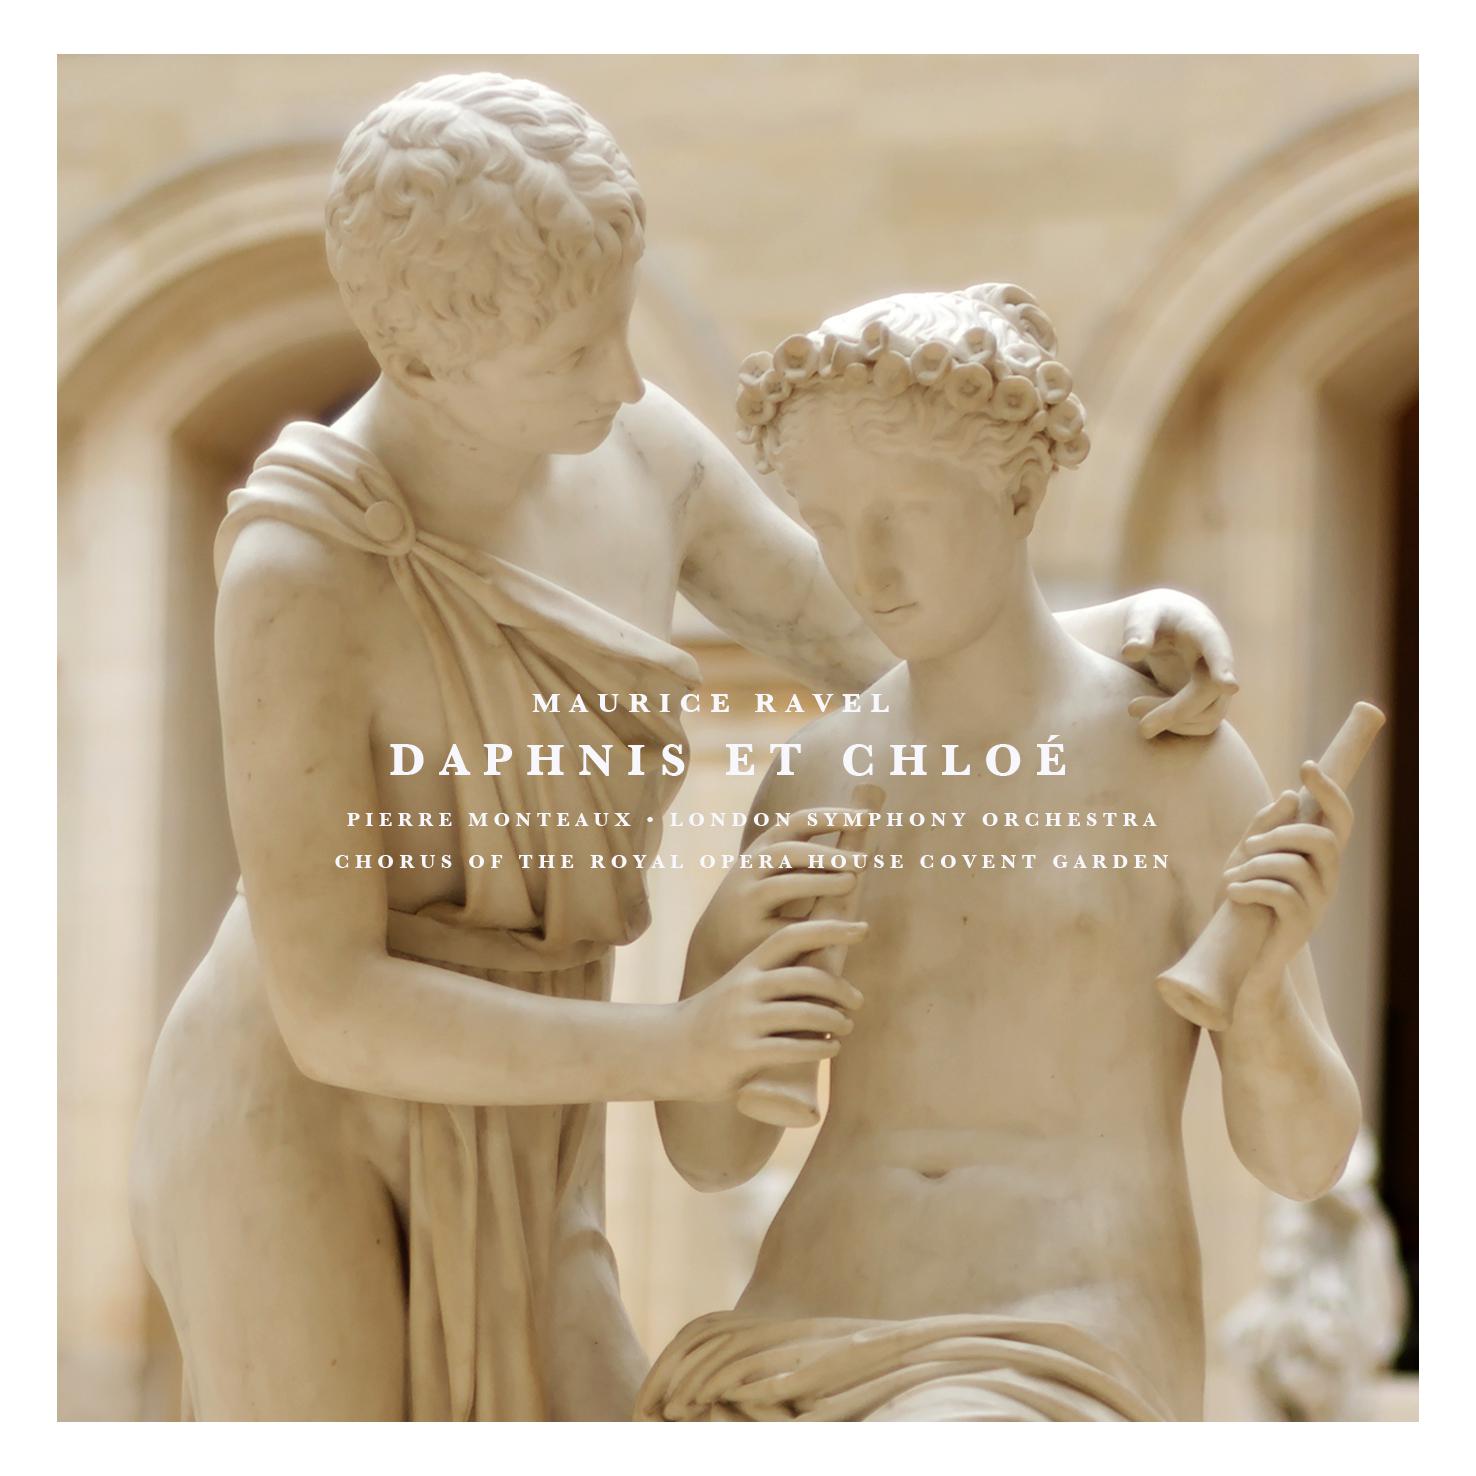 Daphnis Et Chloé: Part I "Danse lente et mystérieuse des Nymphes"